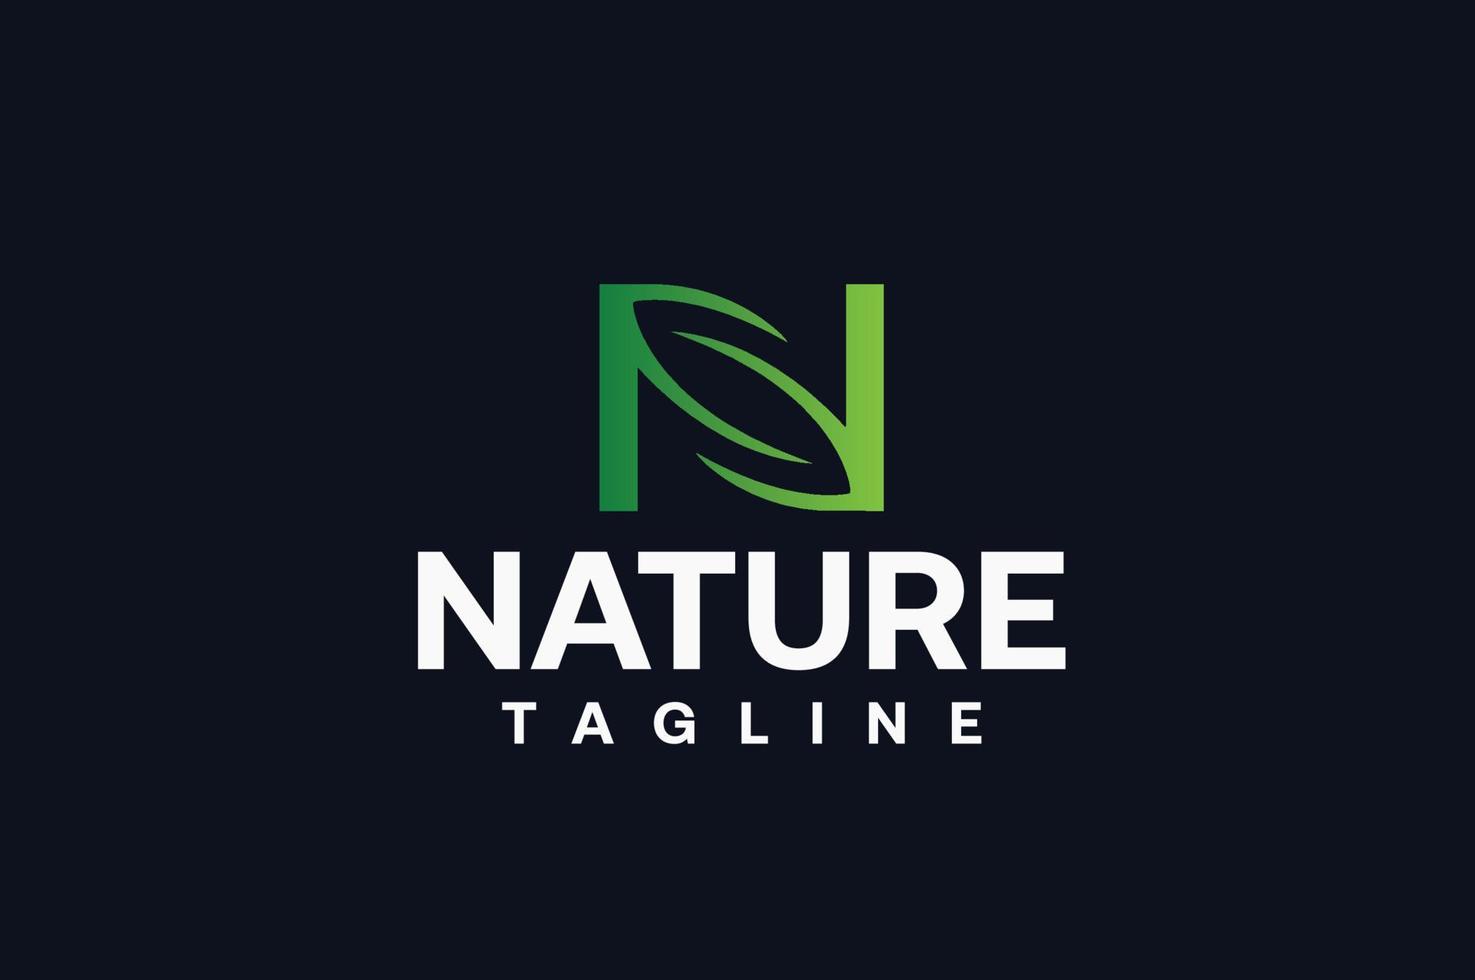 logo della natura verde. elemento del modello di progettazione del logo di vettore della lettera n dell'icona della foglia